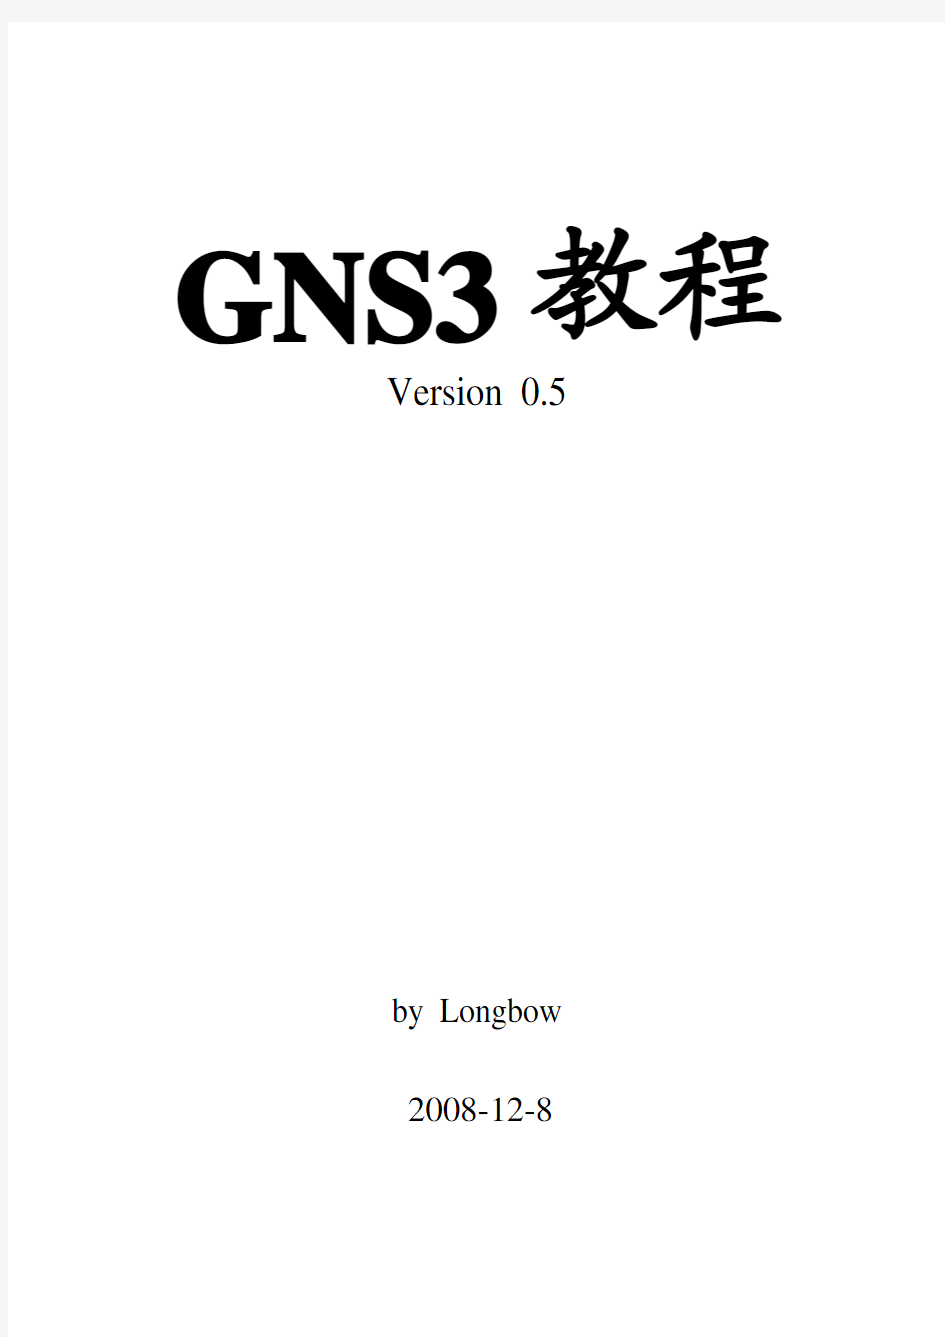 GNS3使用手册